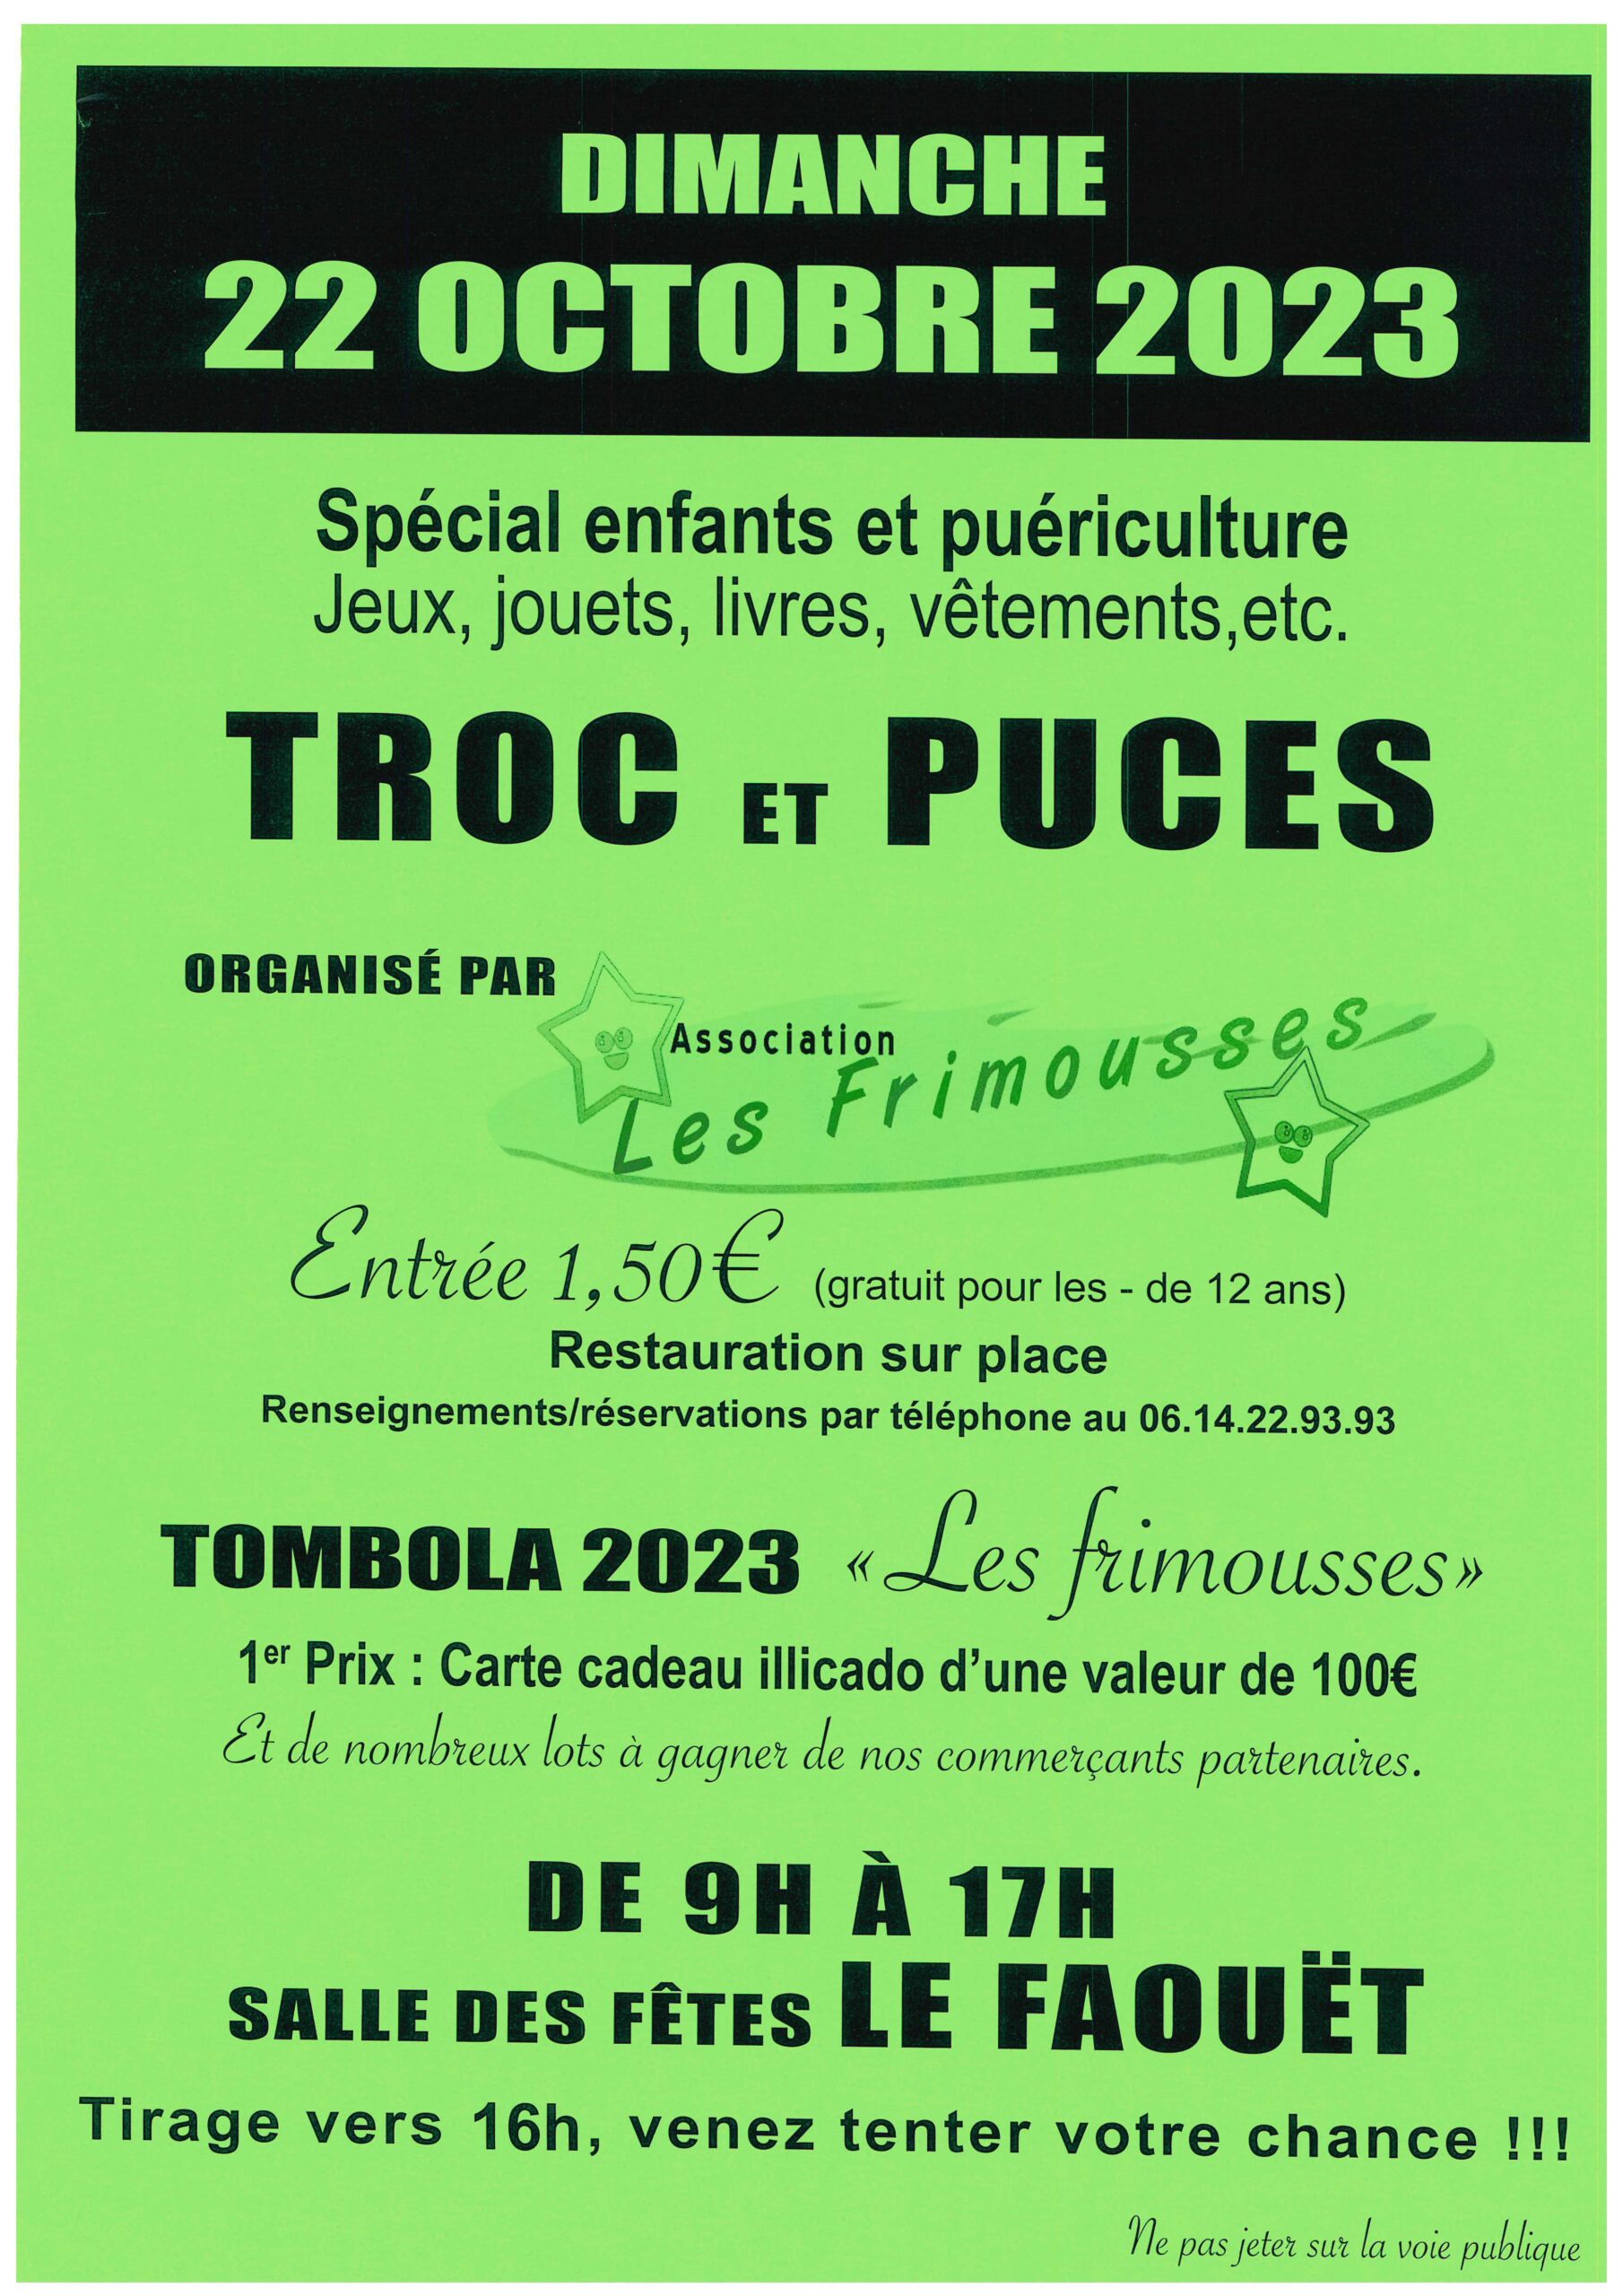 Association Les Frimousses – Troc et puces spécial enfants et puériculture